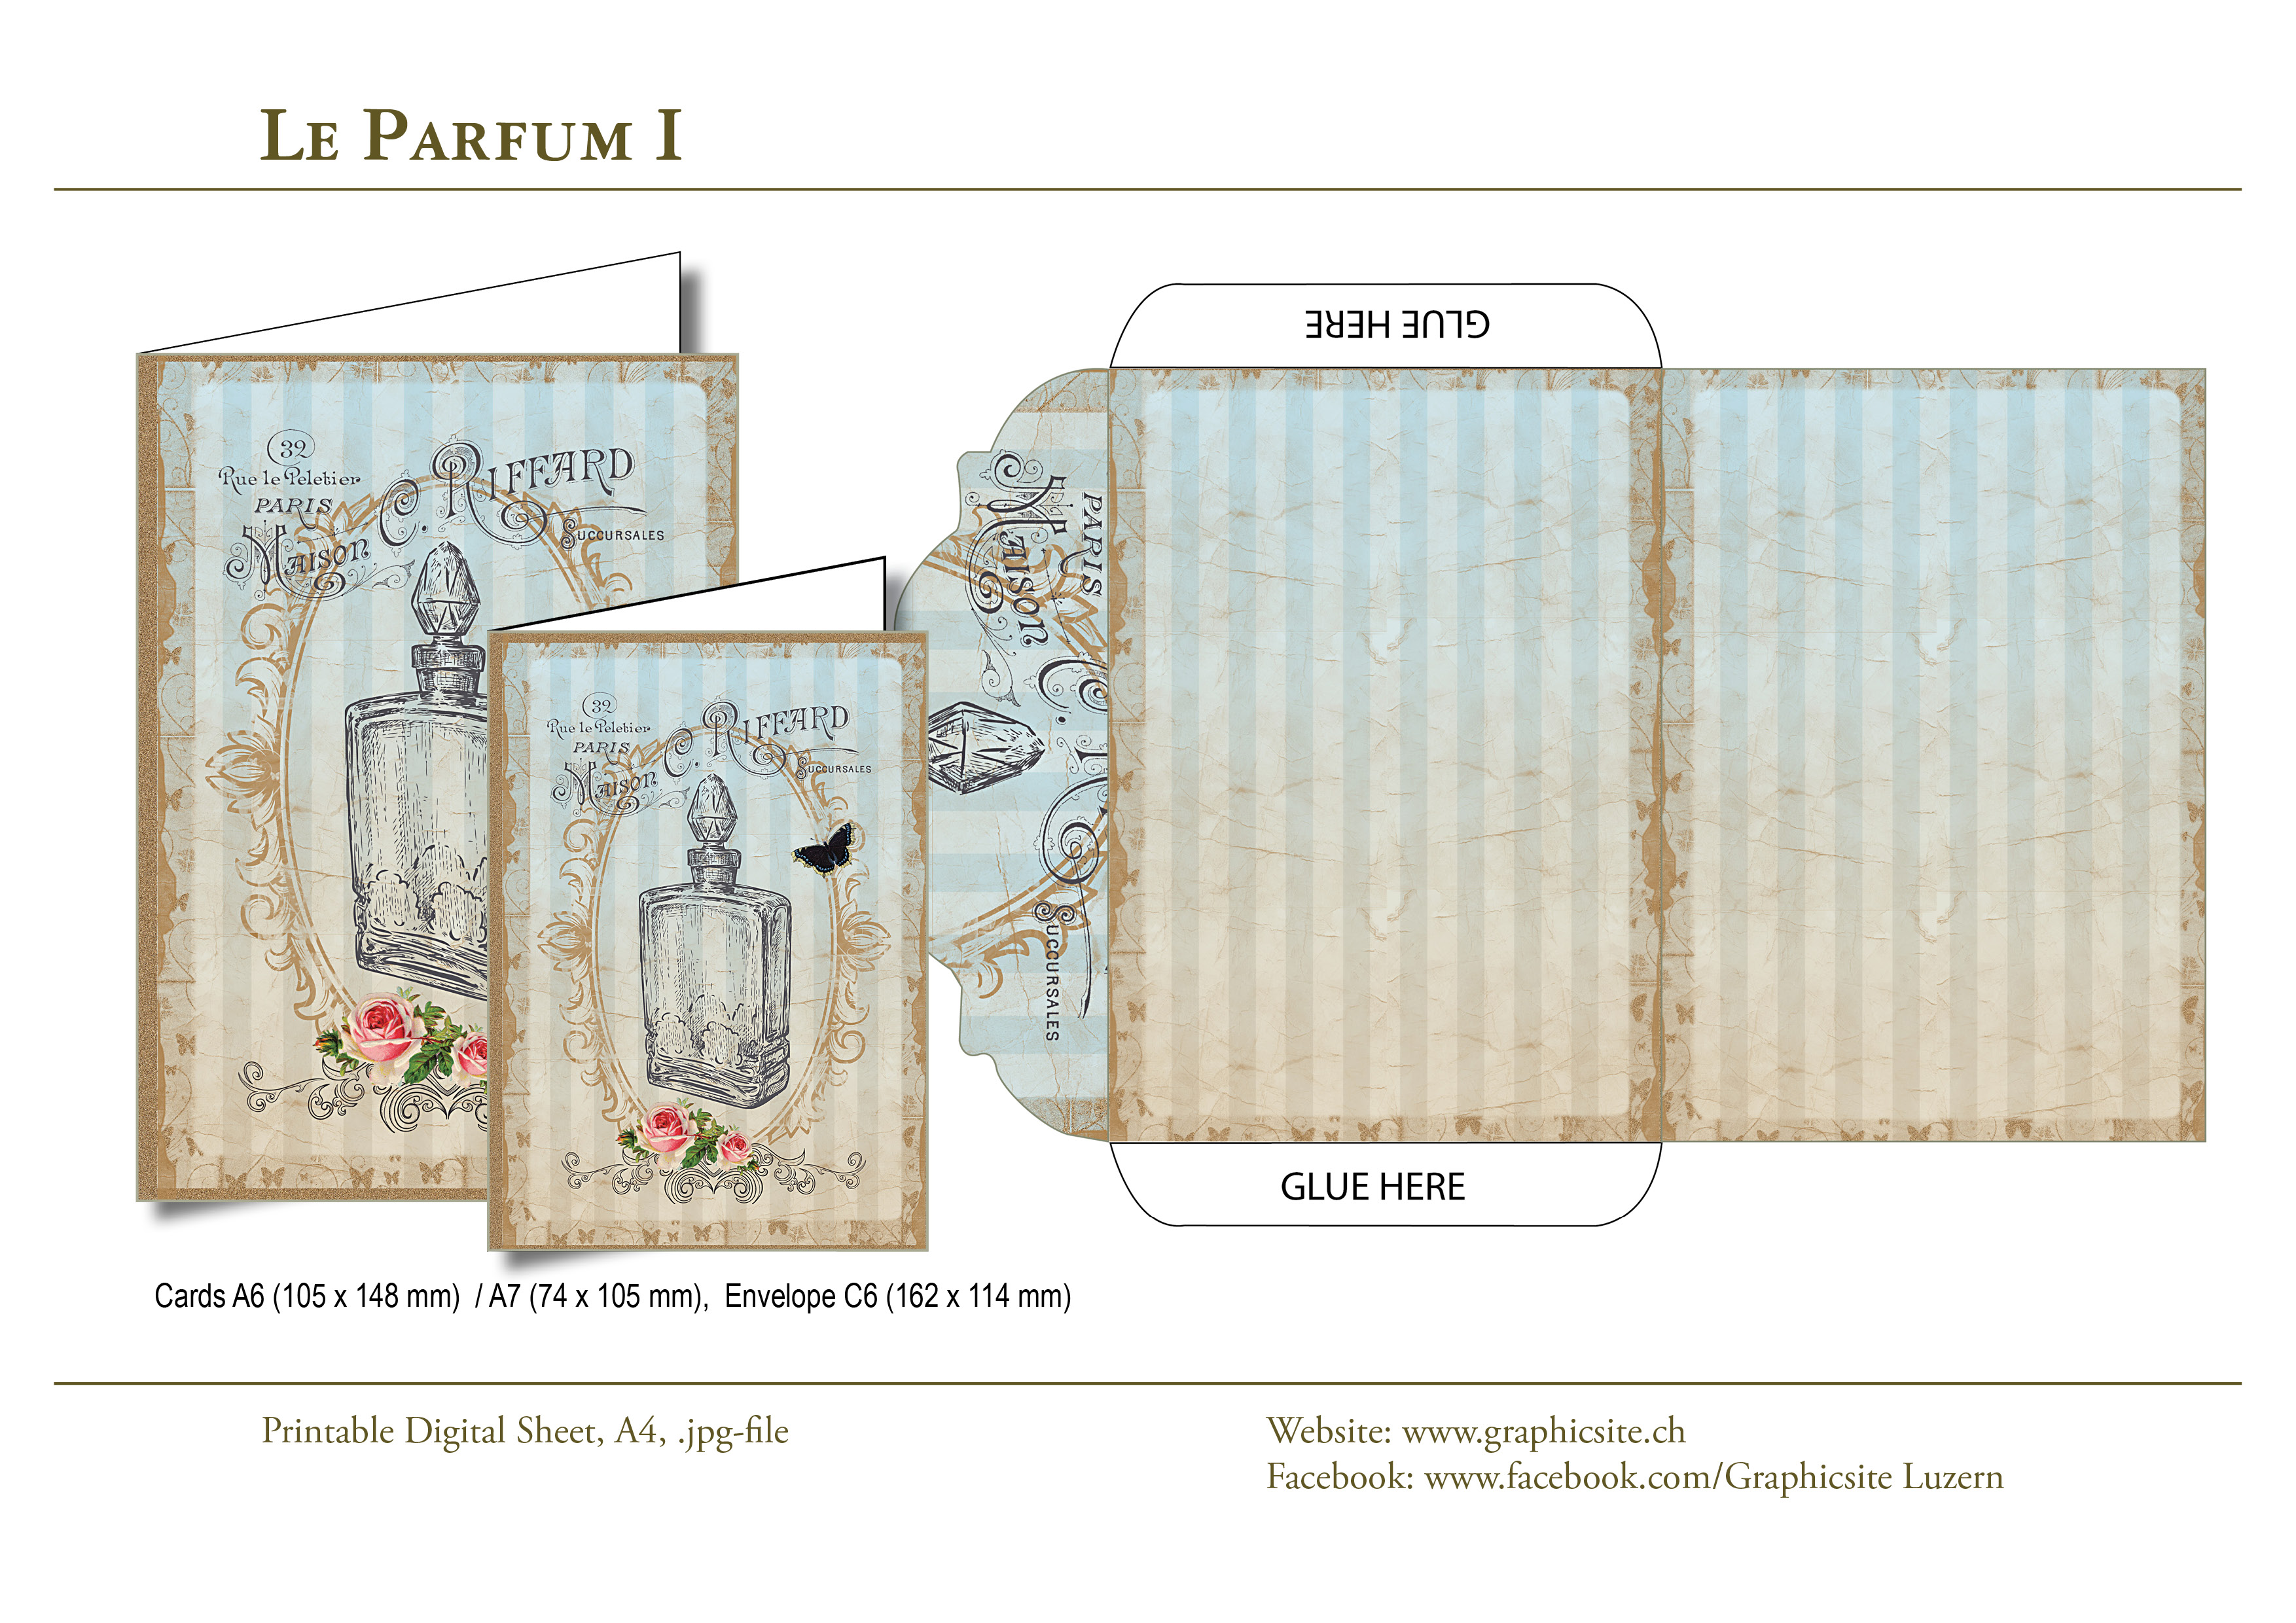 Printable Digital Sheet - DIN A-Formats - Le Parfum I